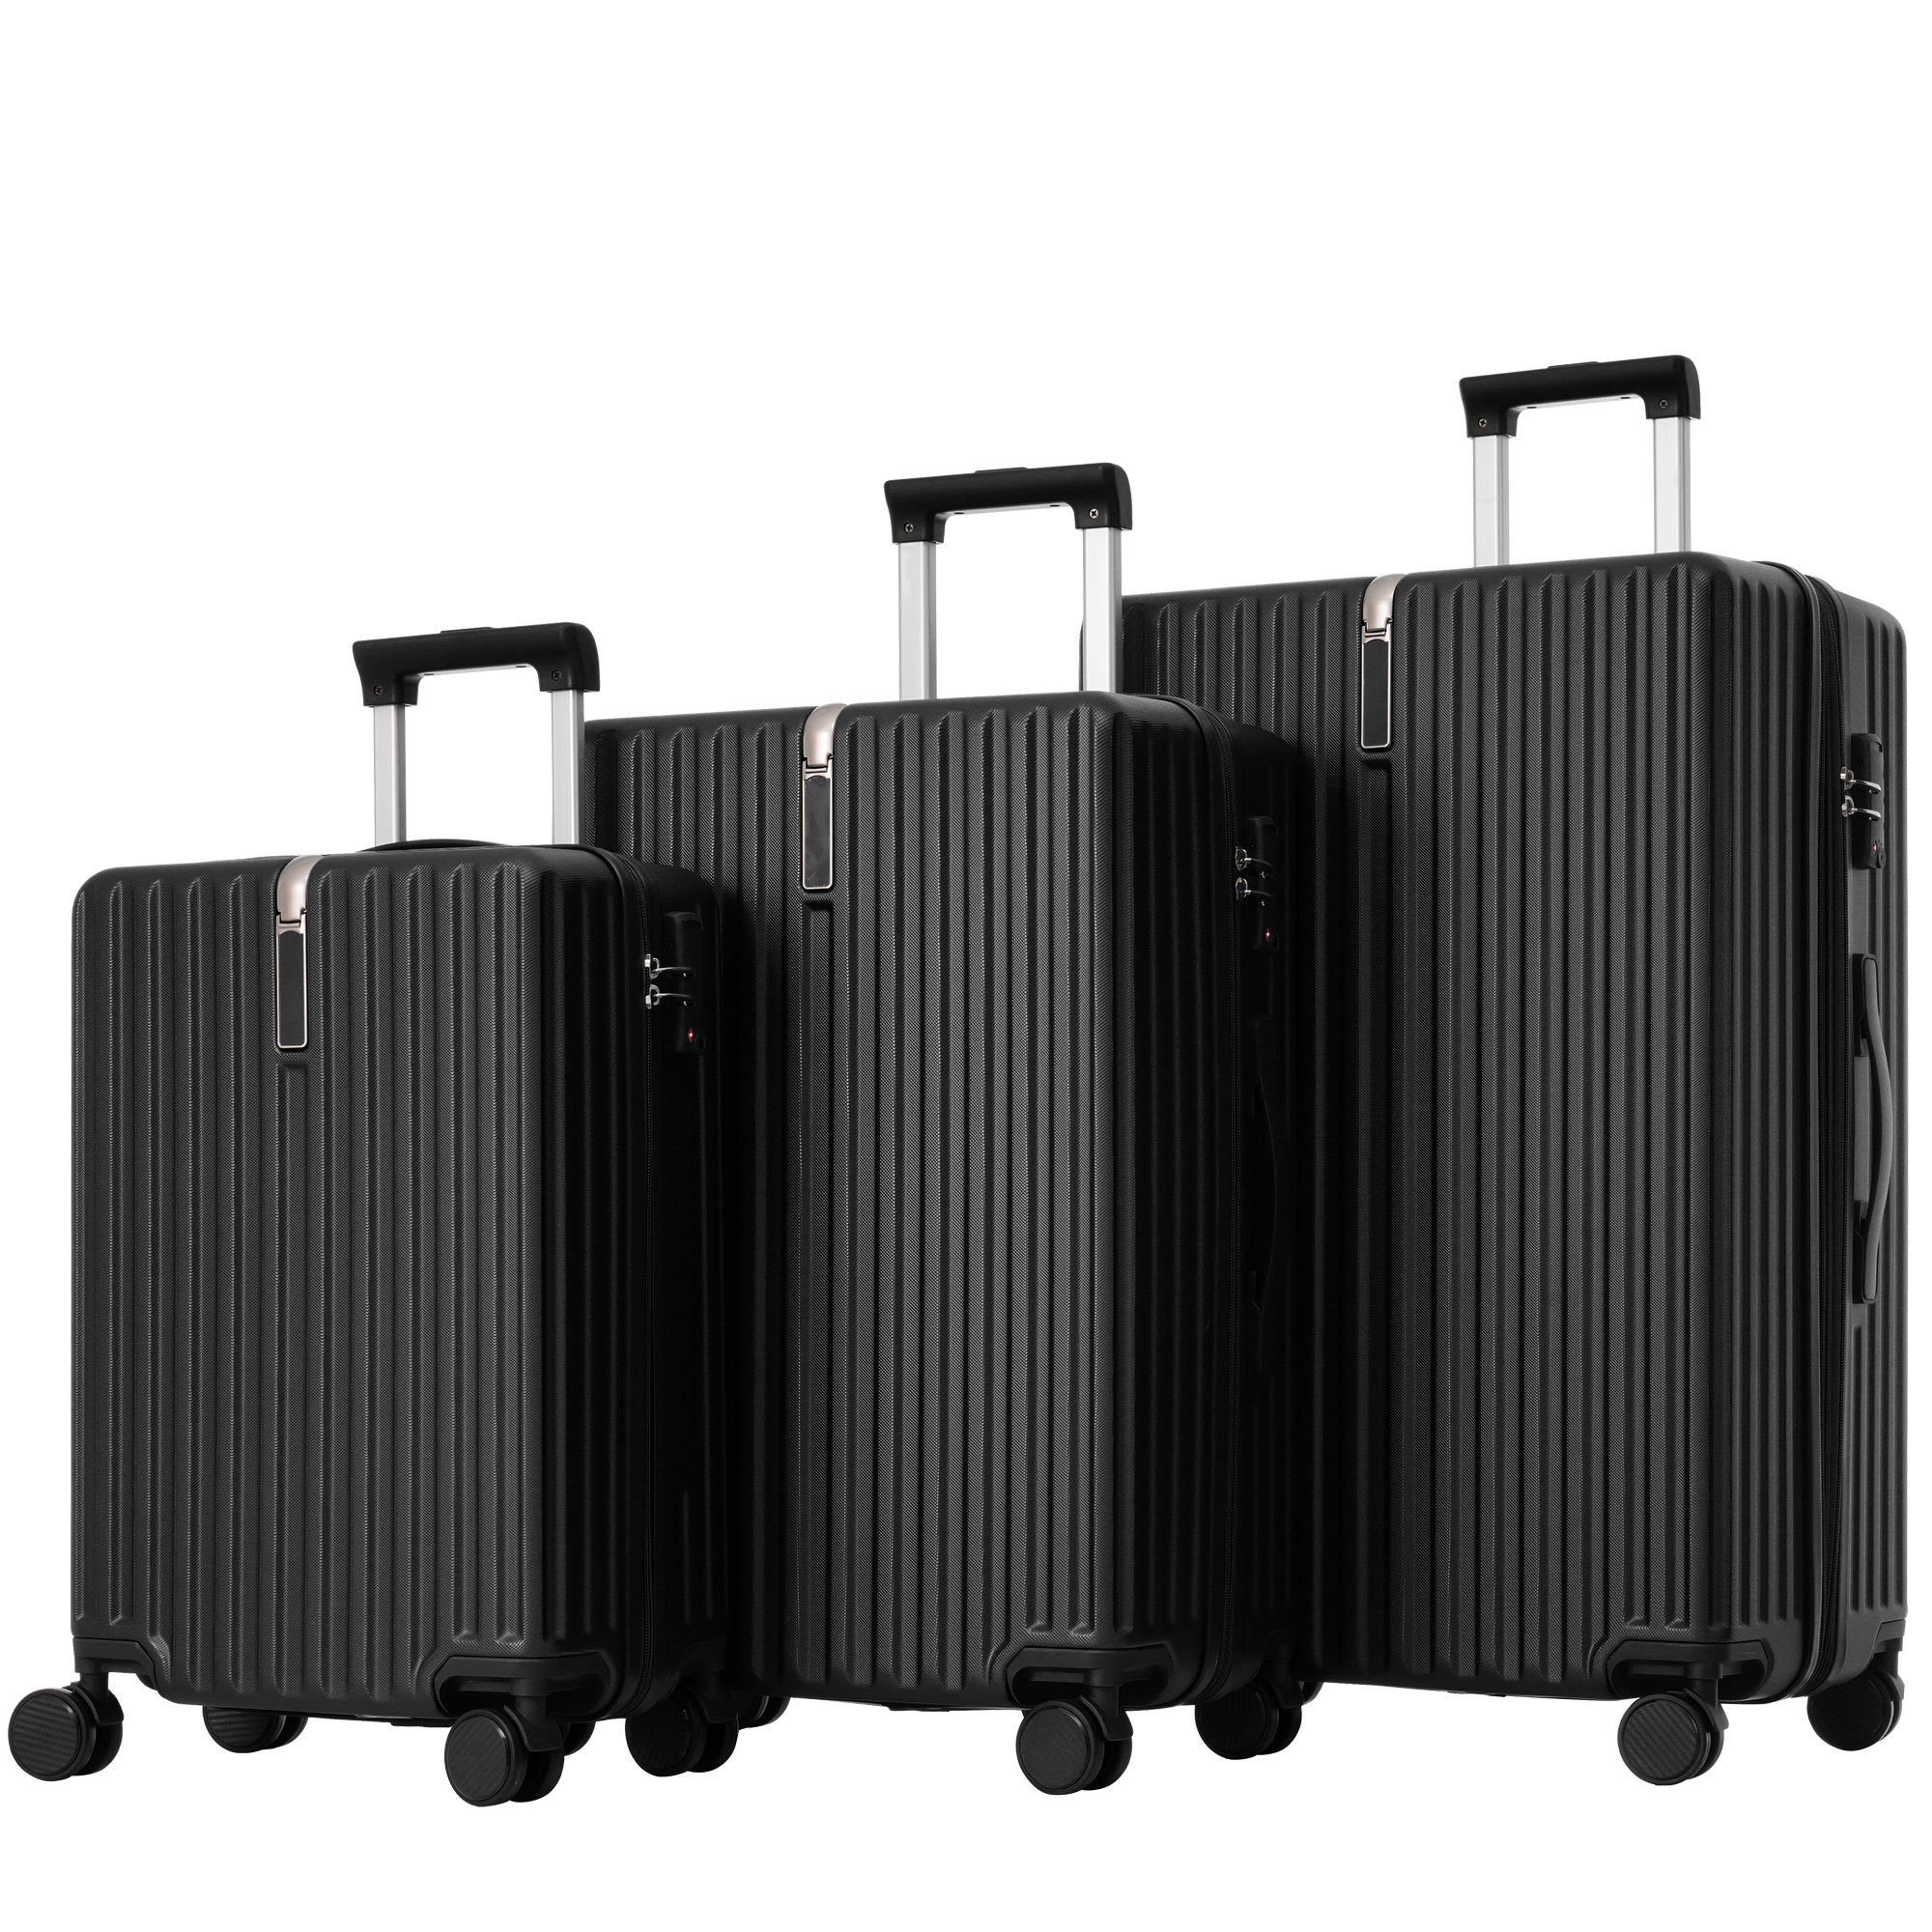 Ulife Trolleyset Kofferset Handgepäck Reisekoffer ABS-Material, TSA Zollschloss, 4 Rollen, (3 tlg) Schwarz | Trolley-Sets